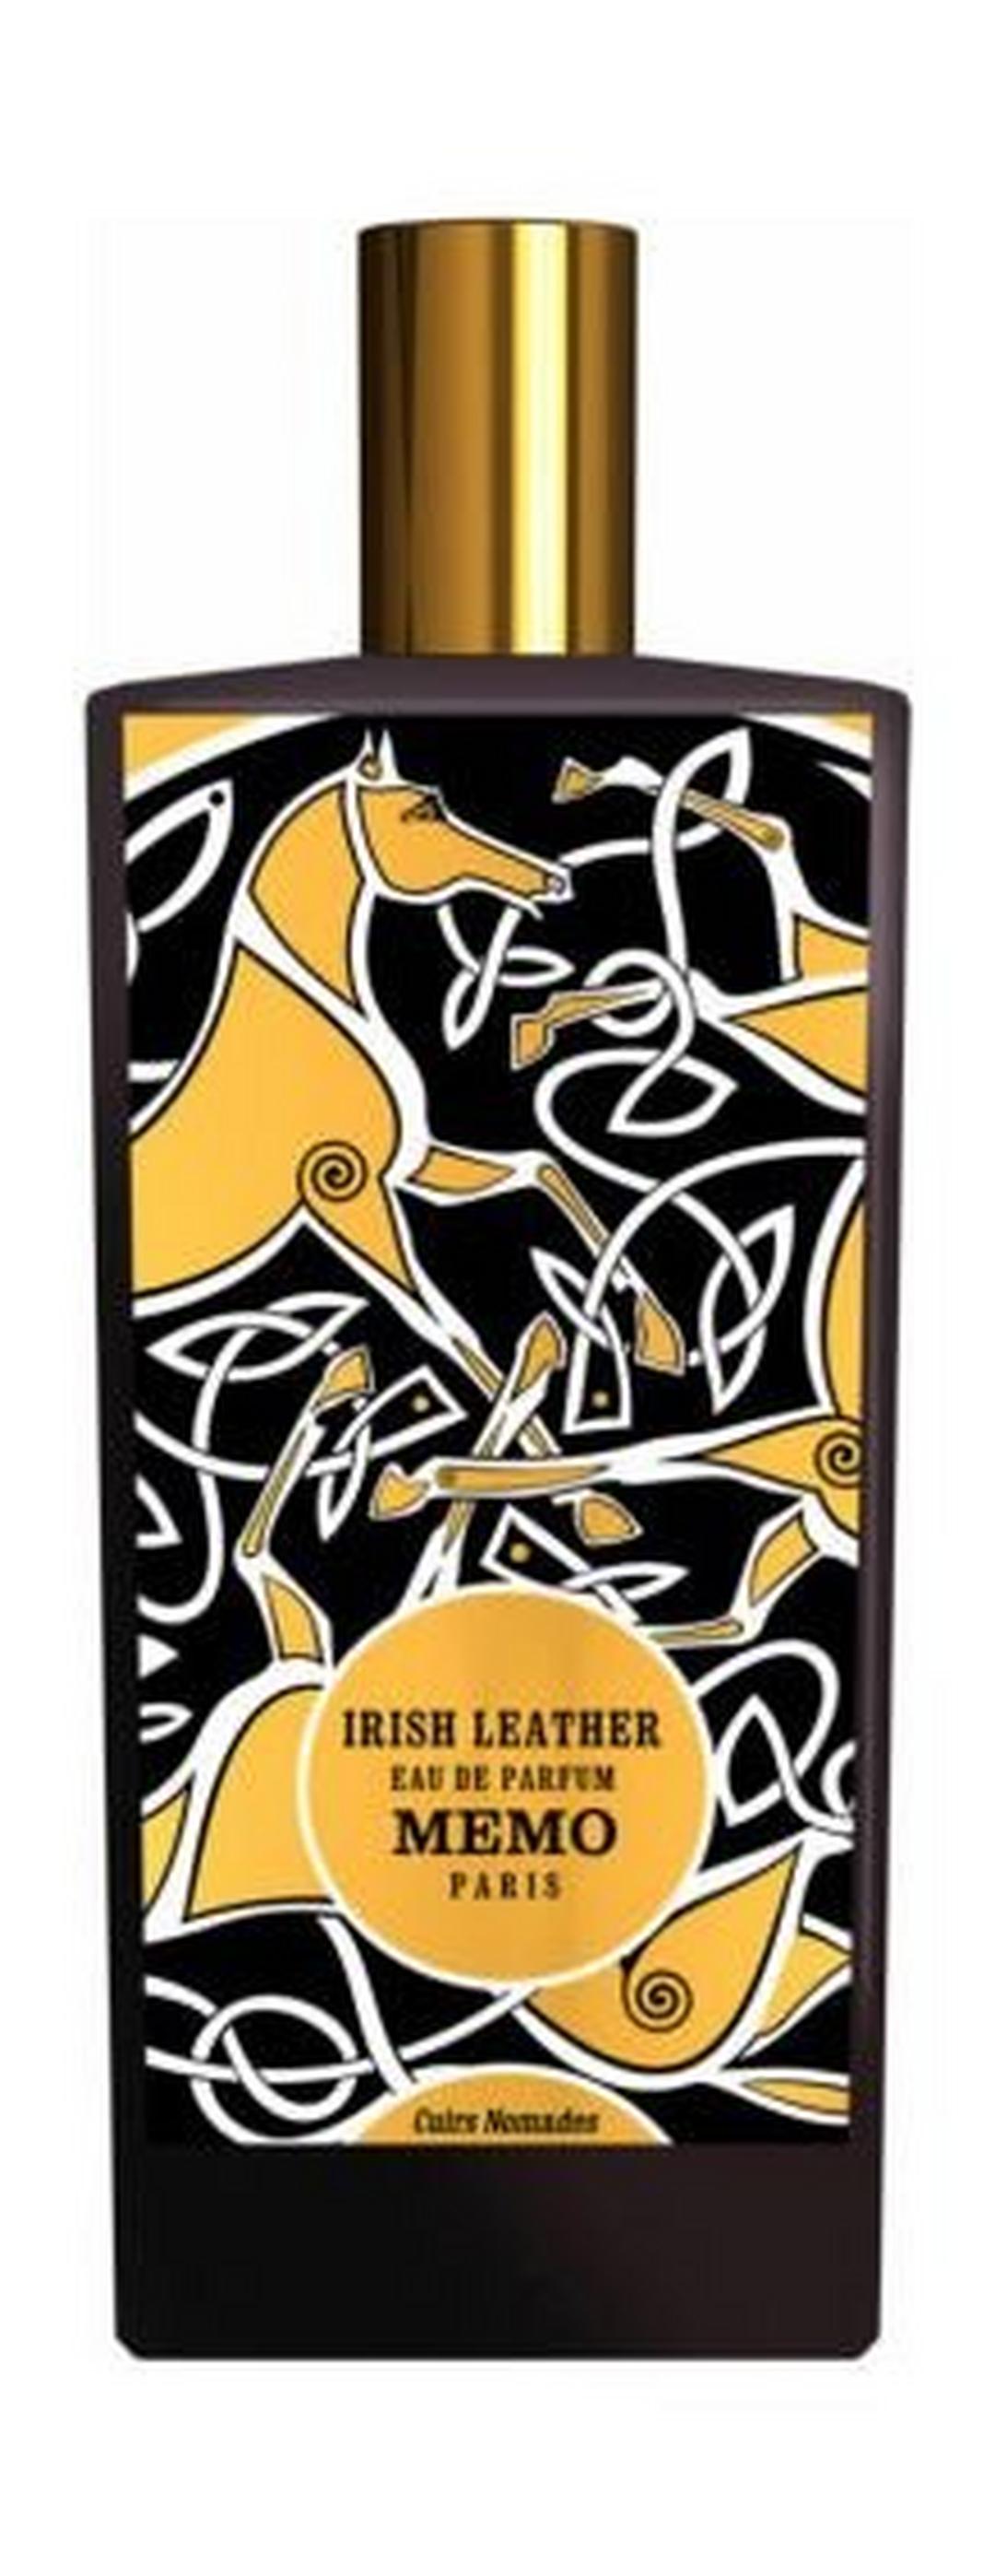 Irish Leather by Memo Paris For Men and Women 75ml Eau de Parfum